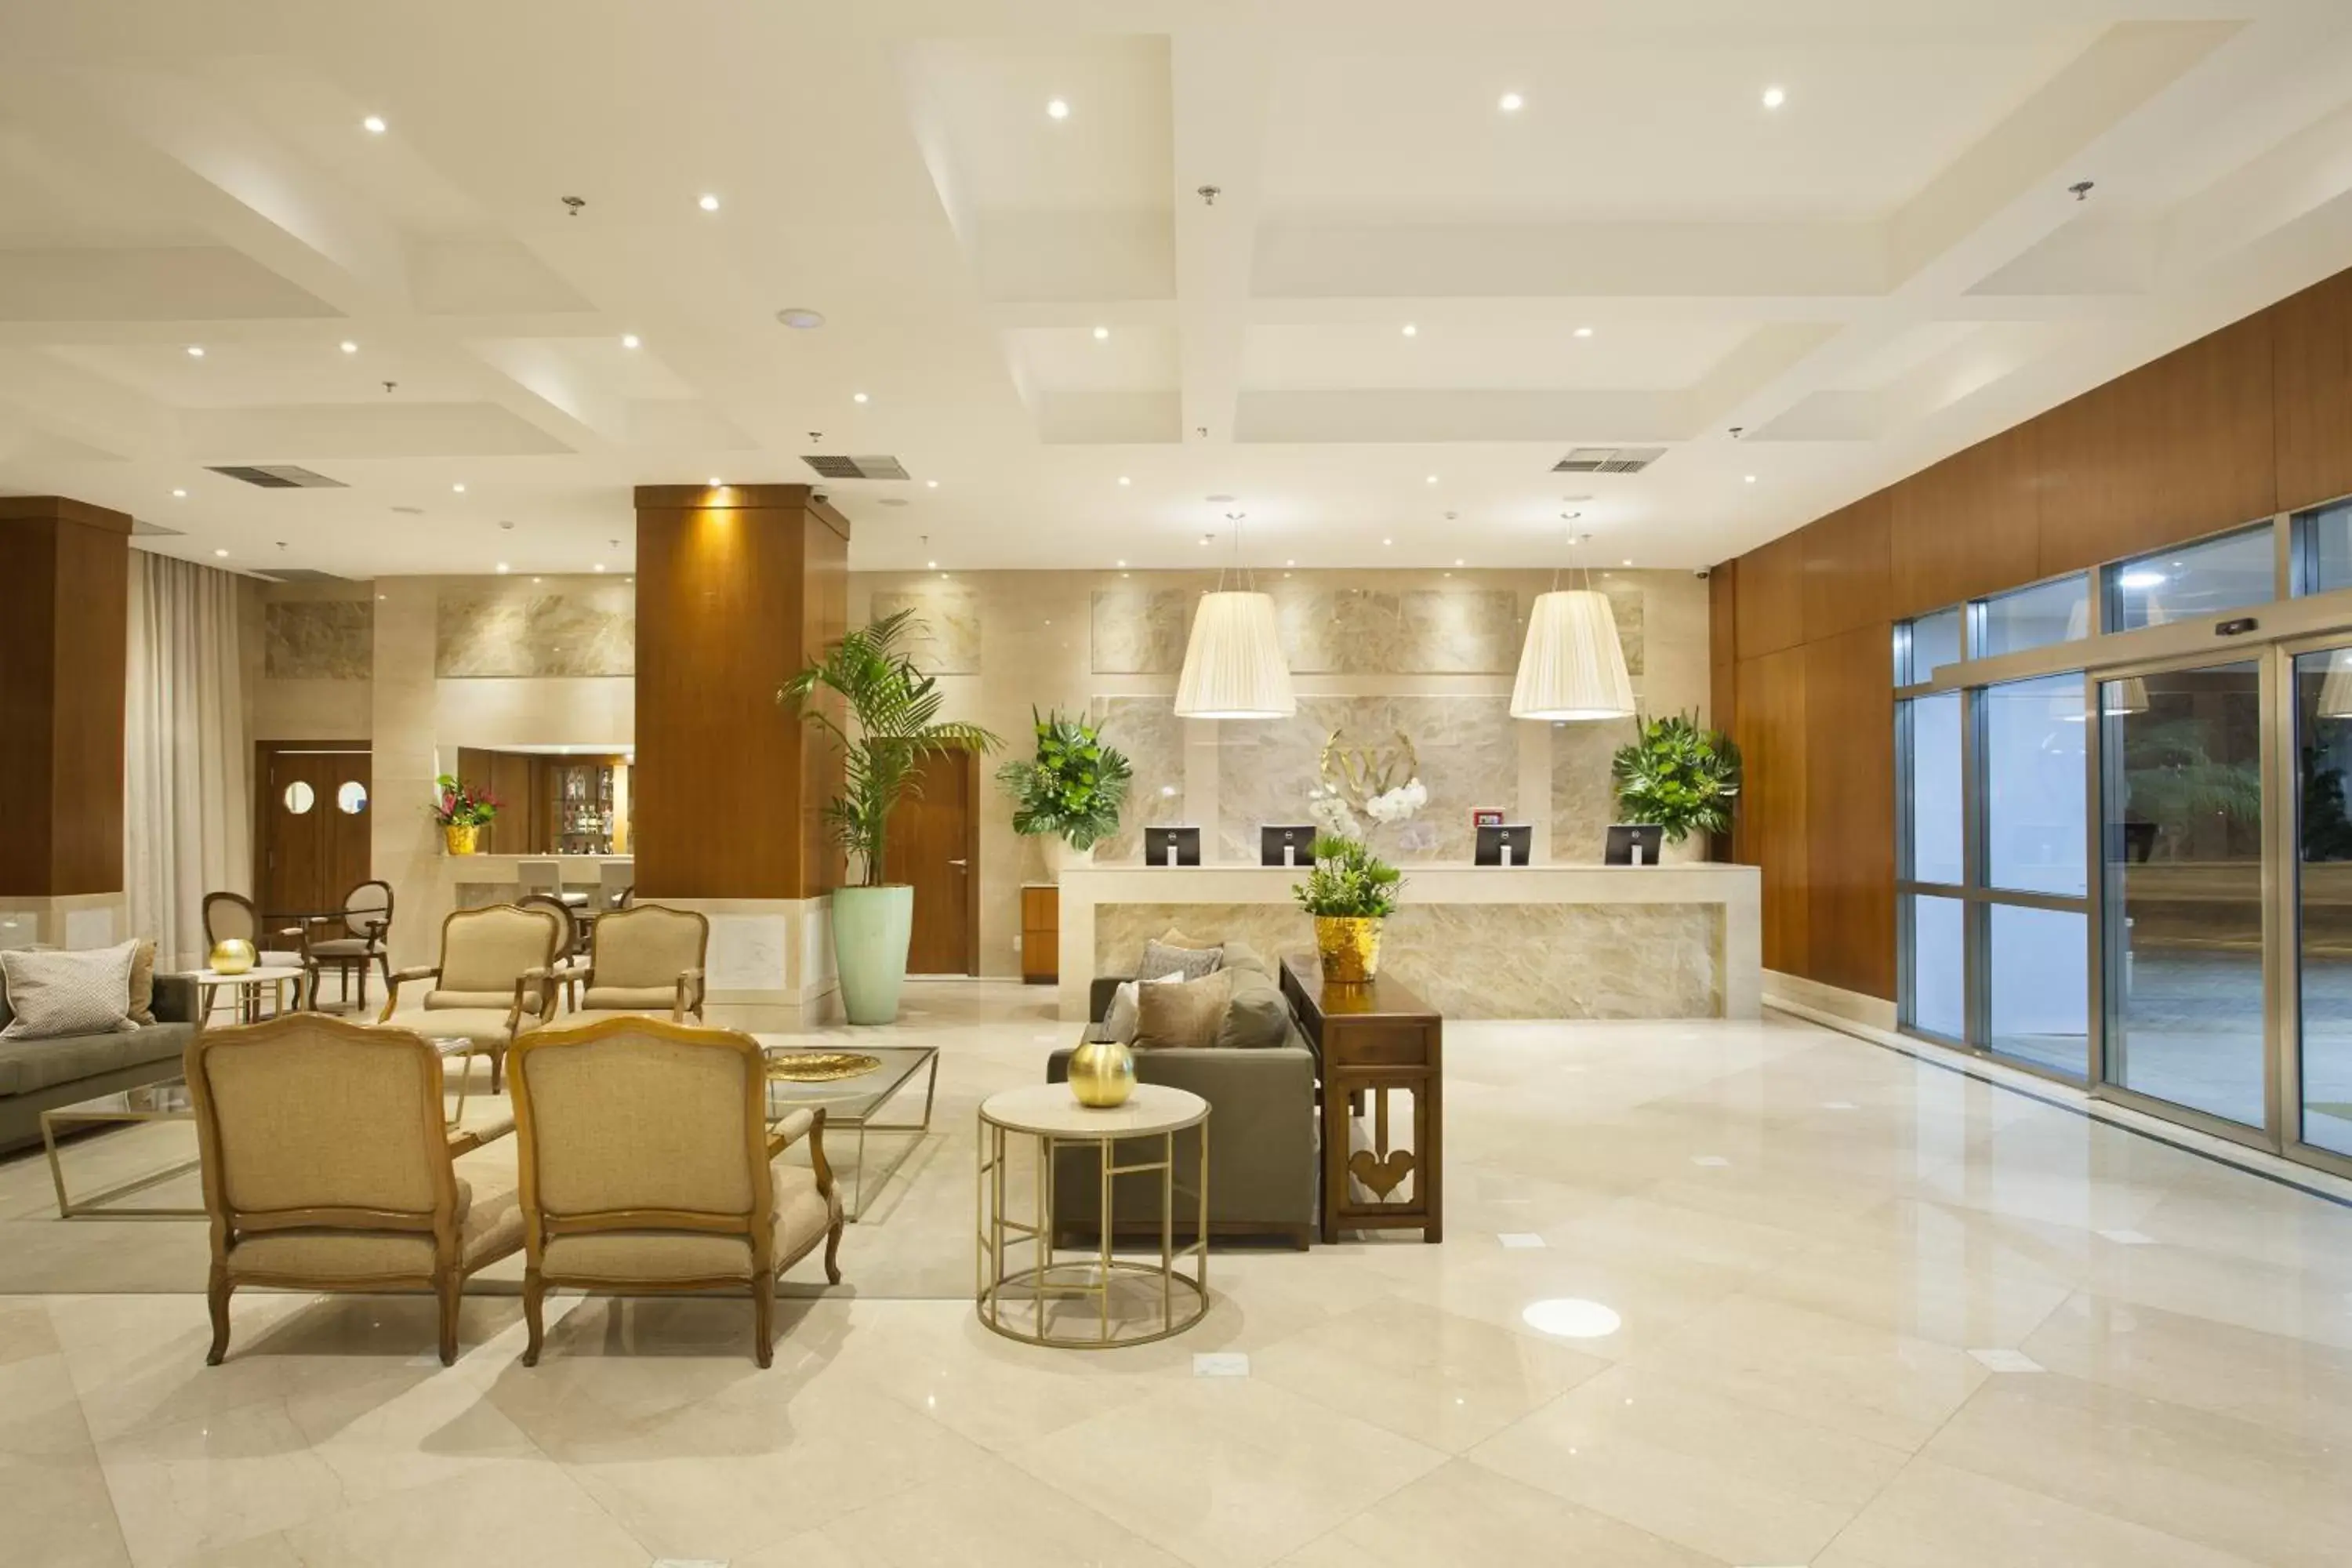 Lobby or reception, Lobby/Reception in Windsor Brasilia Hotel